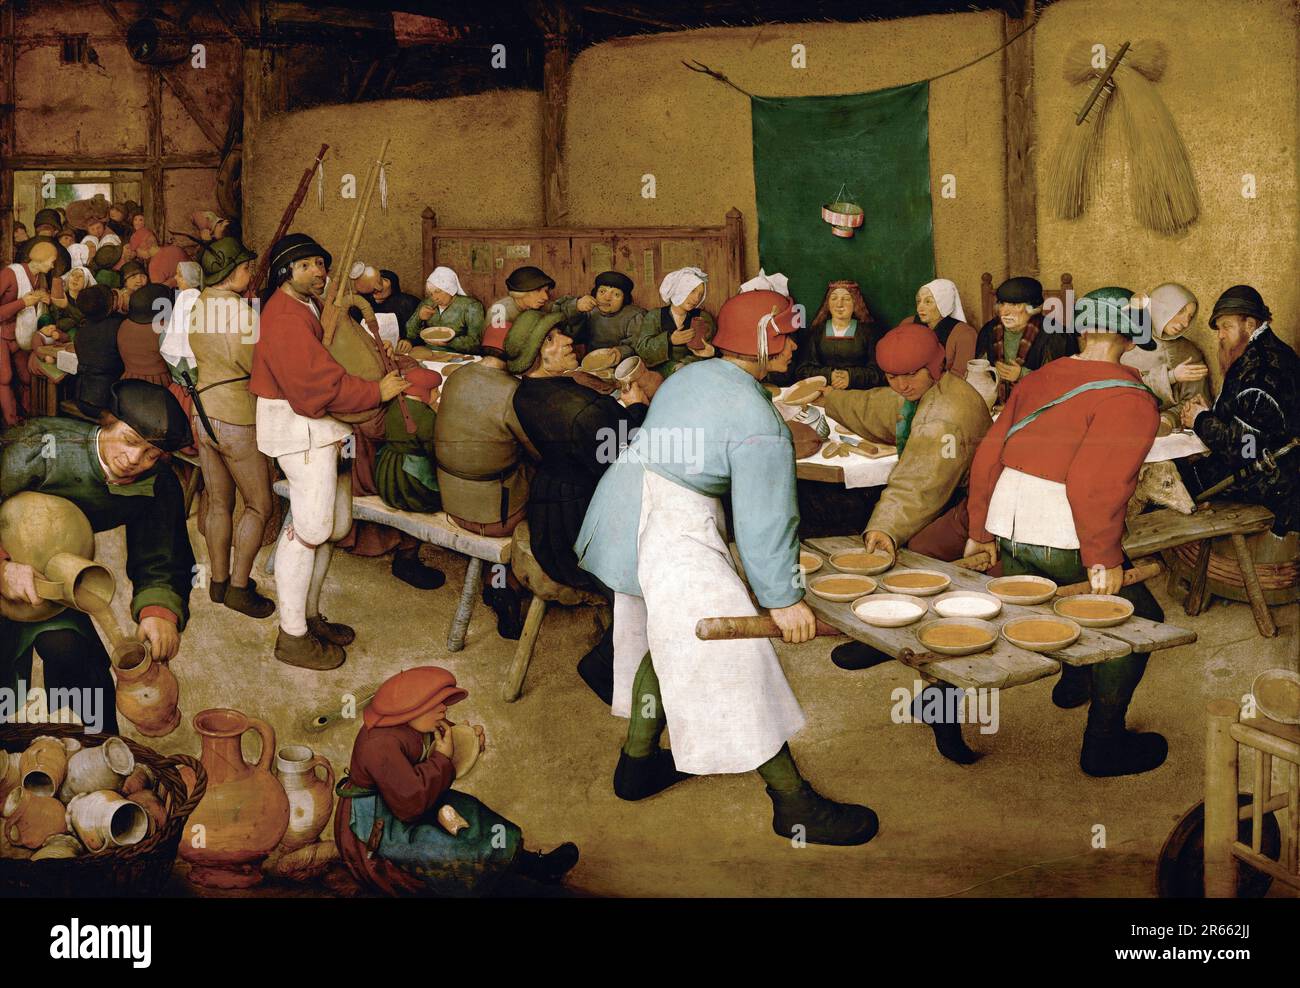 Il matrimonio contadino dipinto dal pittore rinascimentale olandese Pieter Breughel il Vecchio nel 1566-69. Breughel è stato il pittore più importante del Rinascimento olandese e fiammingo. La sua scelta di soggetti fu influente, rifiutò ritratti e scene religiose a favore di scene locali e contadine. Foto Stock